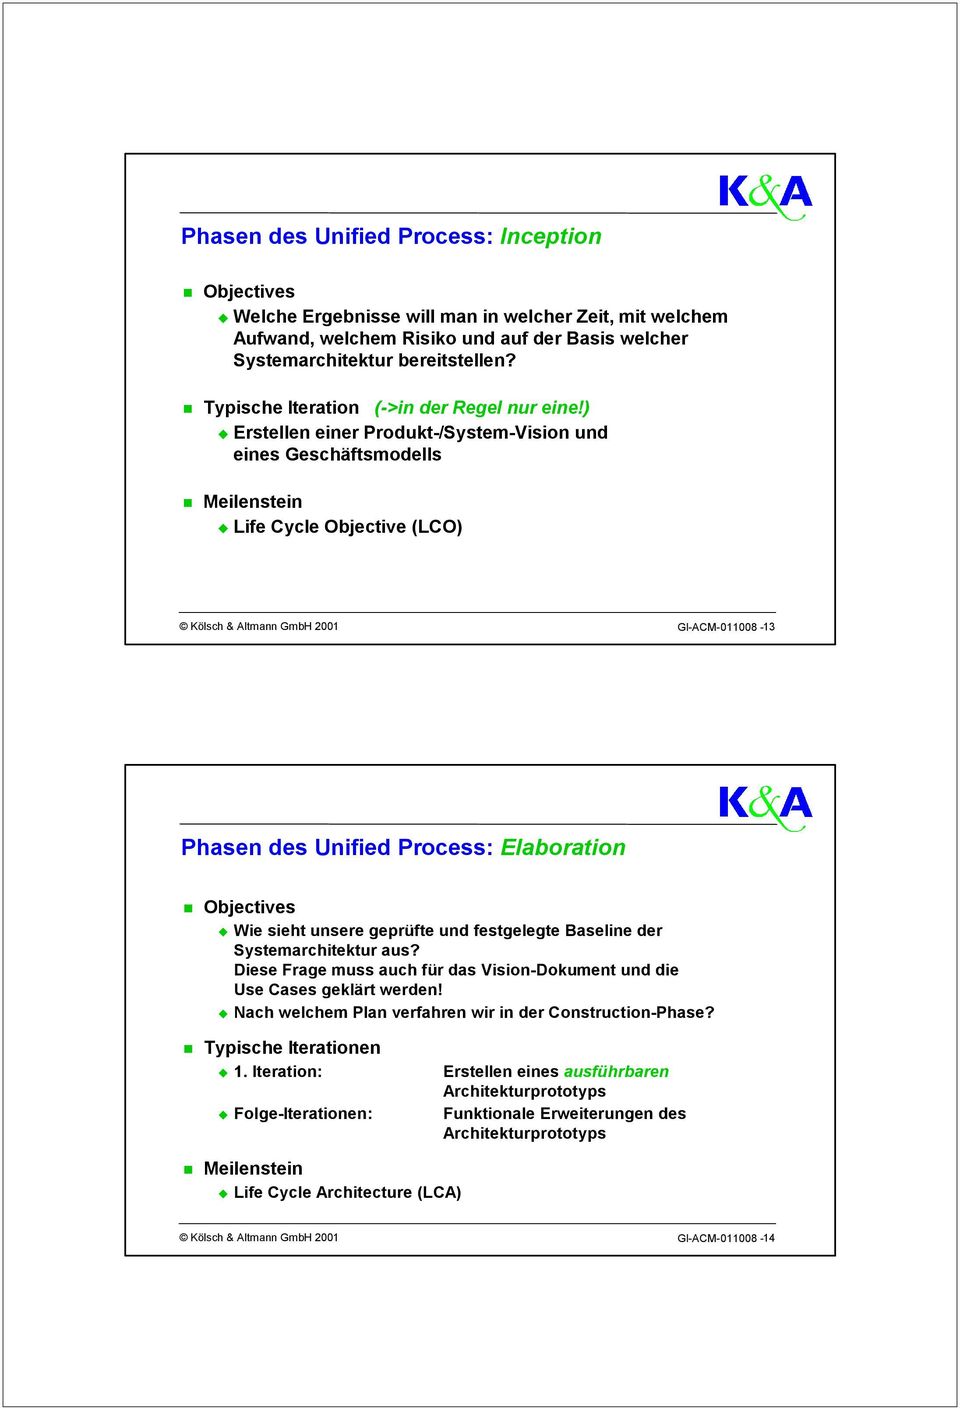 ) Erstellen einer Produkt-/System-Vision und eines Geschäftsmodells Meilenstein Life Cycle Objective (LCO) Kölsch & Altmann GmbH 2001 GI-ACM-011008-13 Phasen des Unified Process: Elaboration